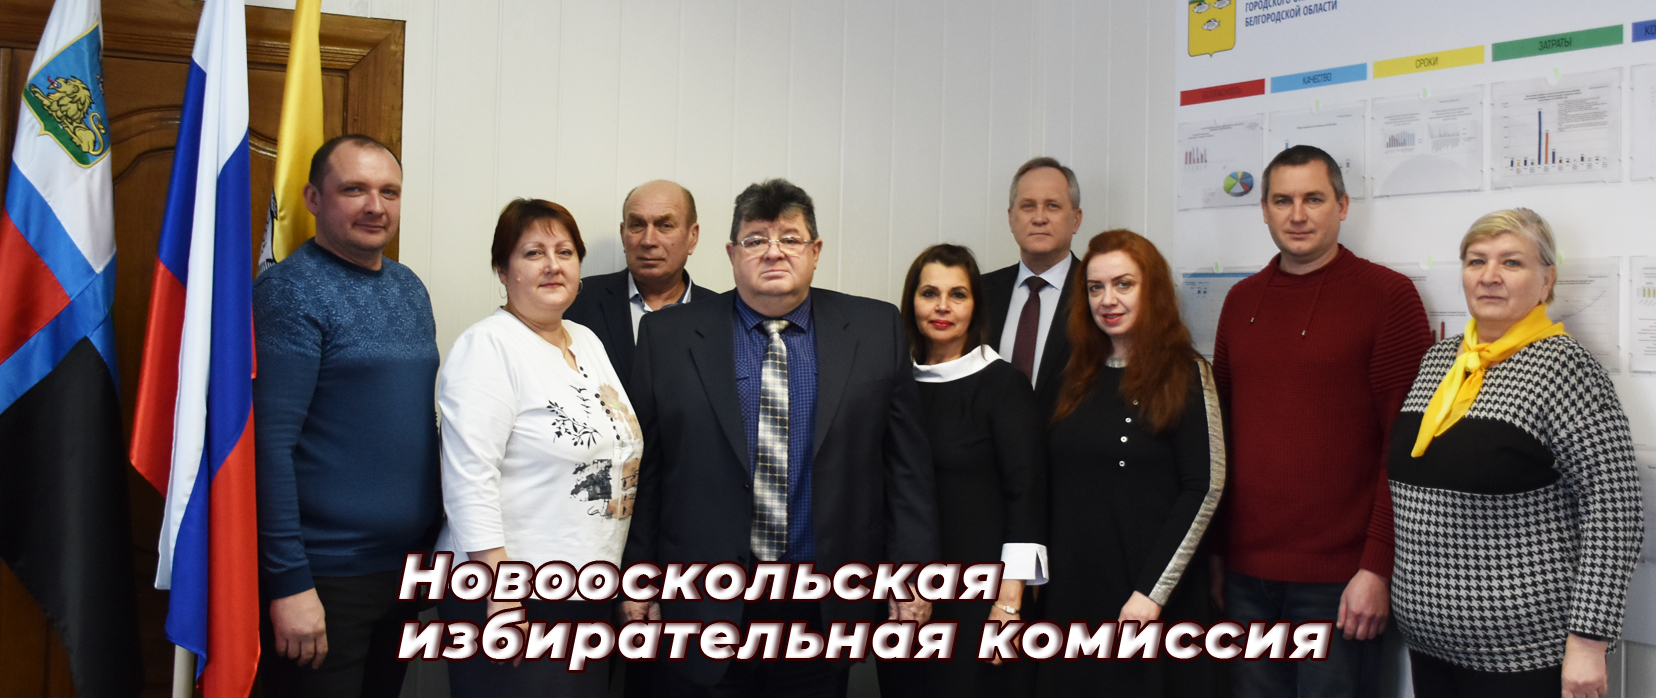 Новооскольская территориальная избирательная комиссия.